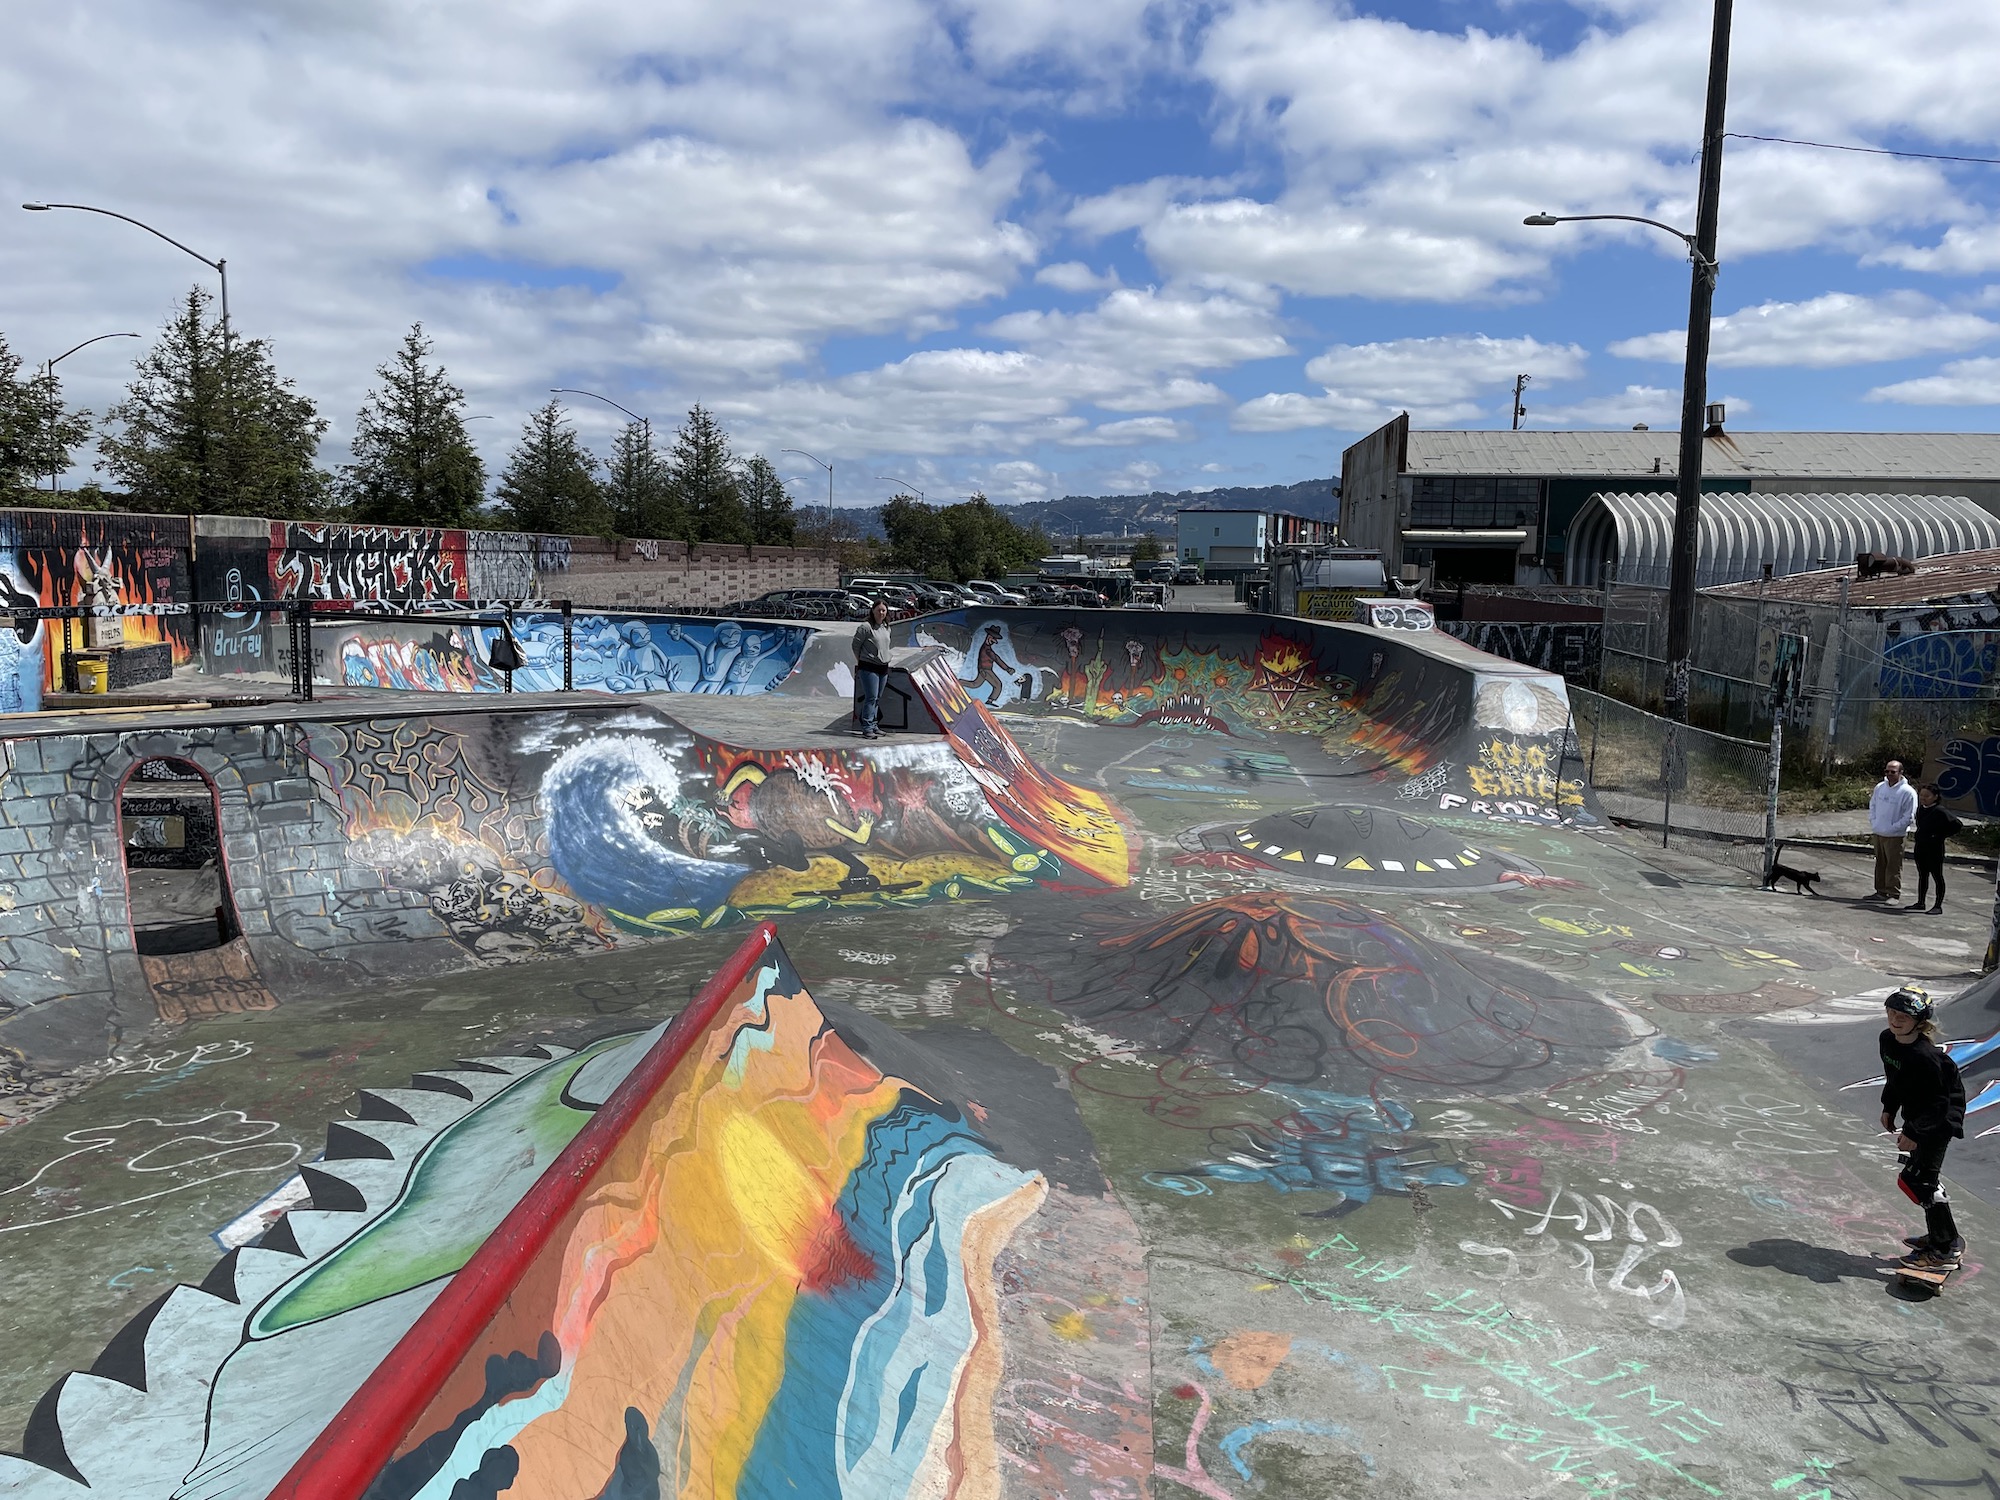 Lower Bobs skatepark